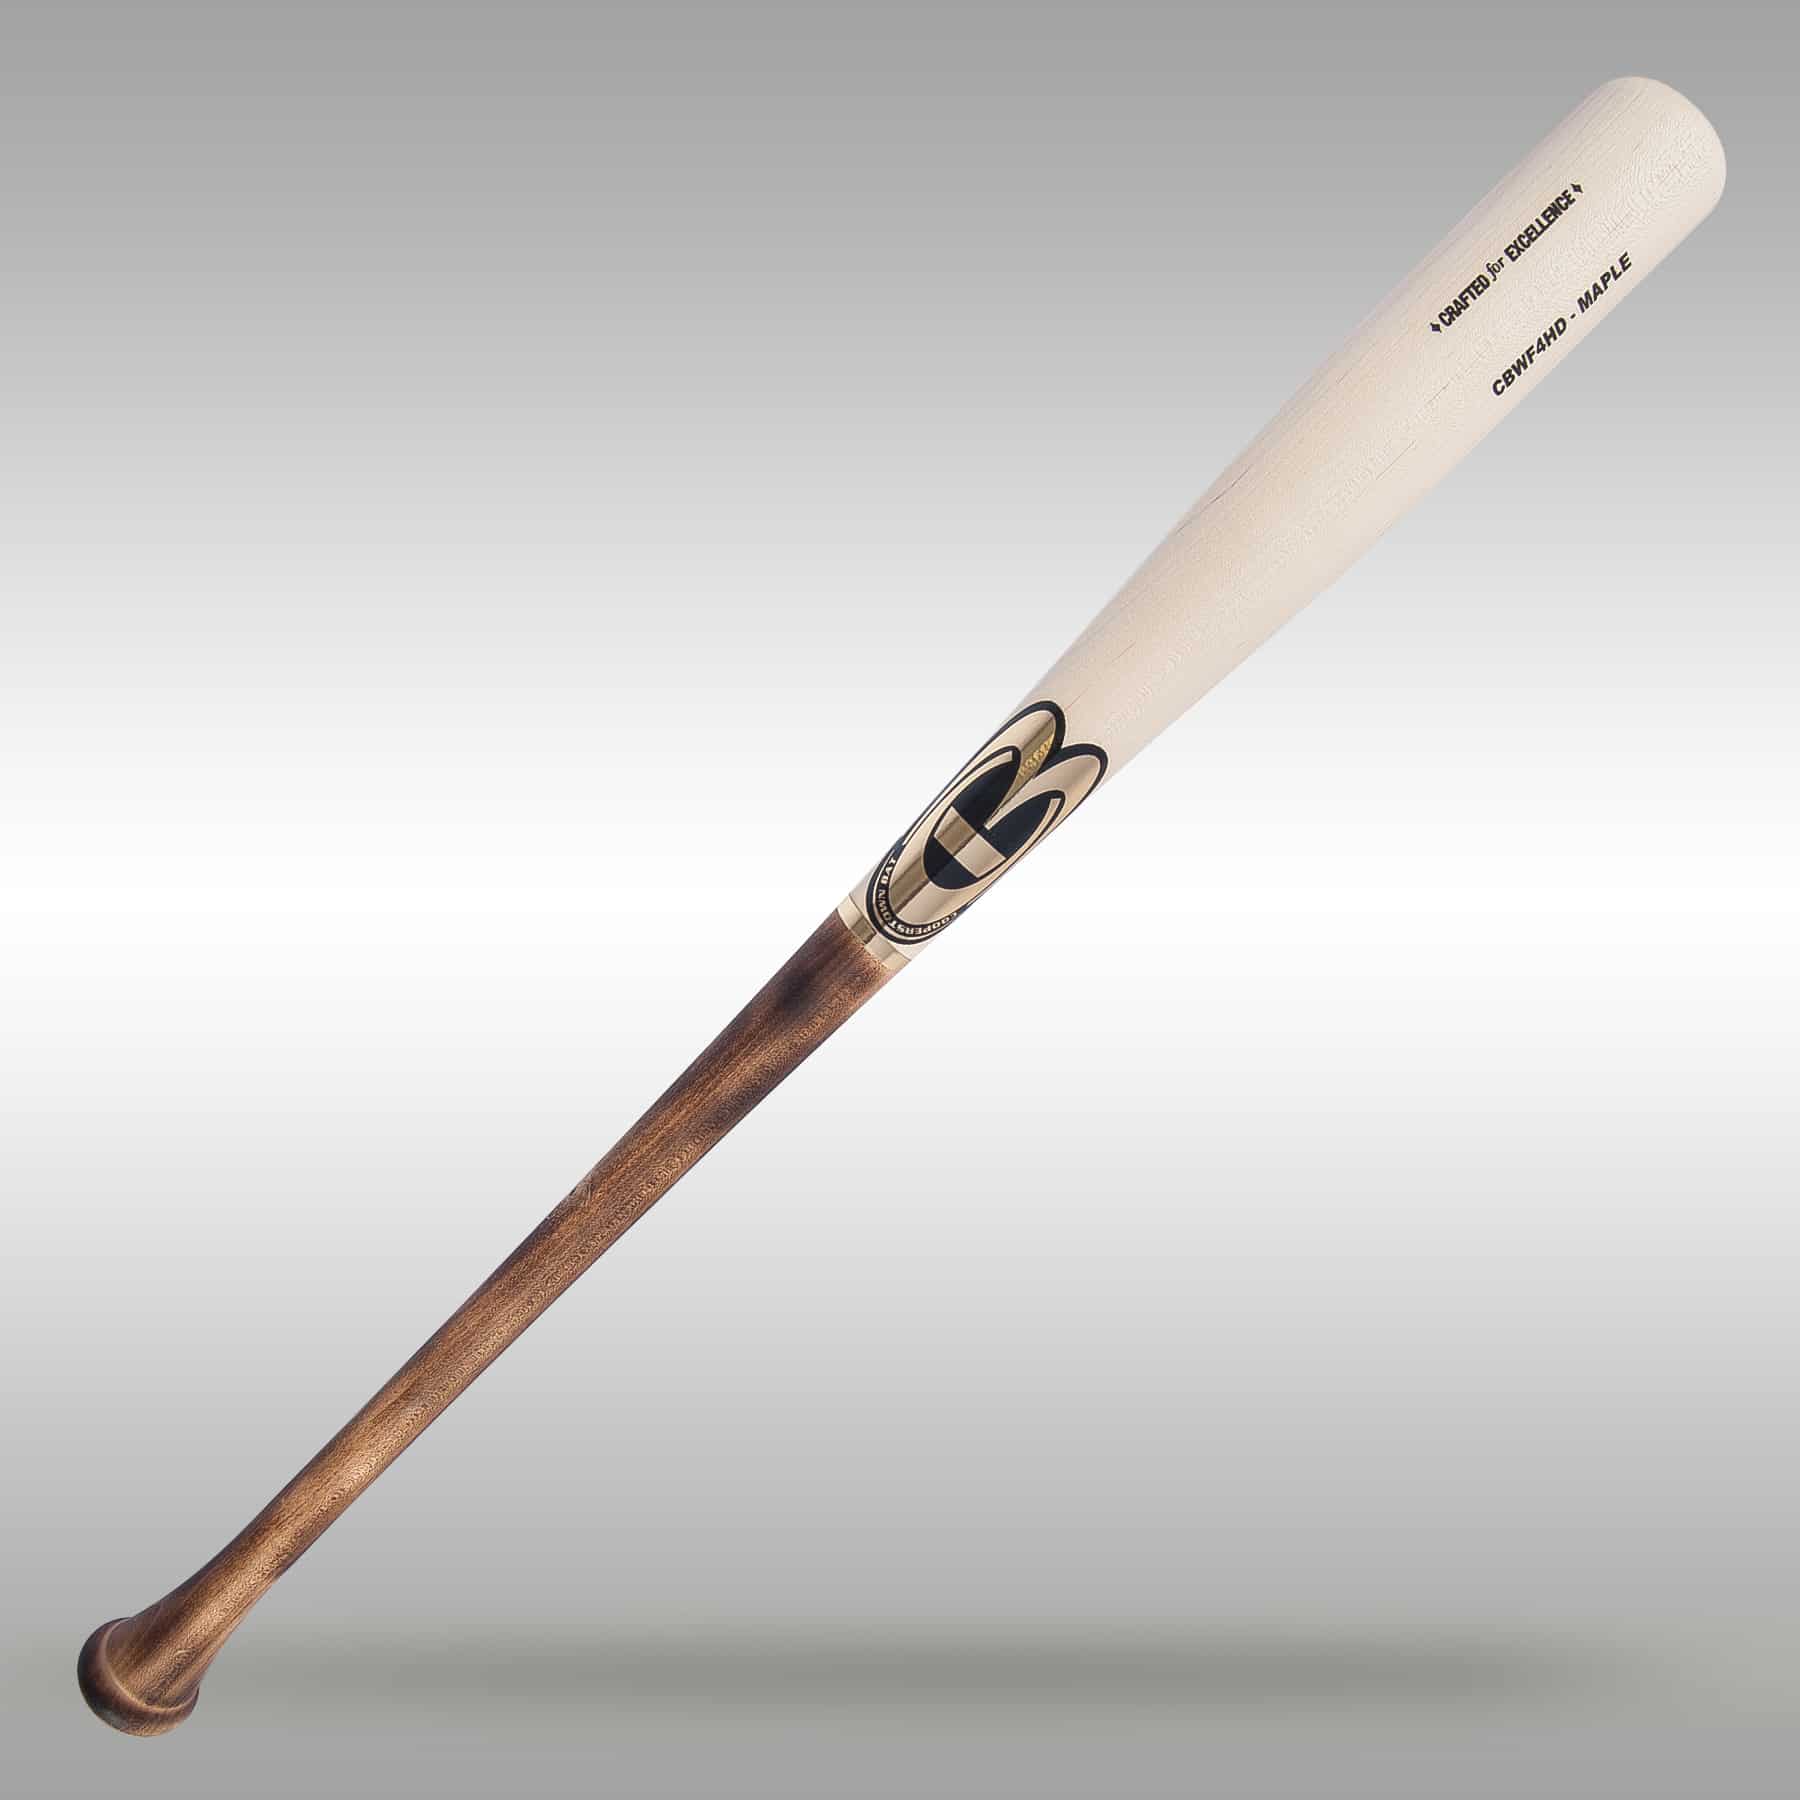 CBWF4HD Pro Maple Wood Baseball Bat